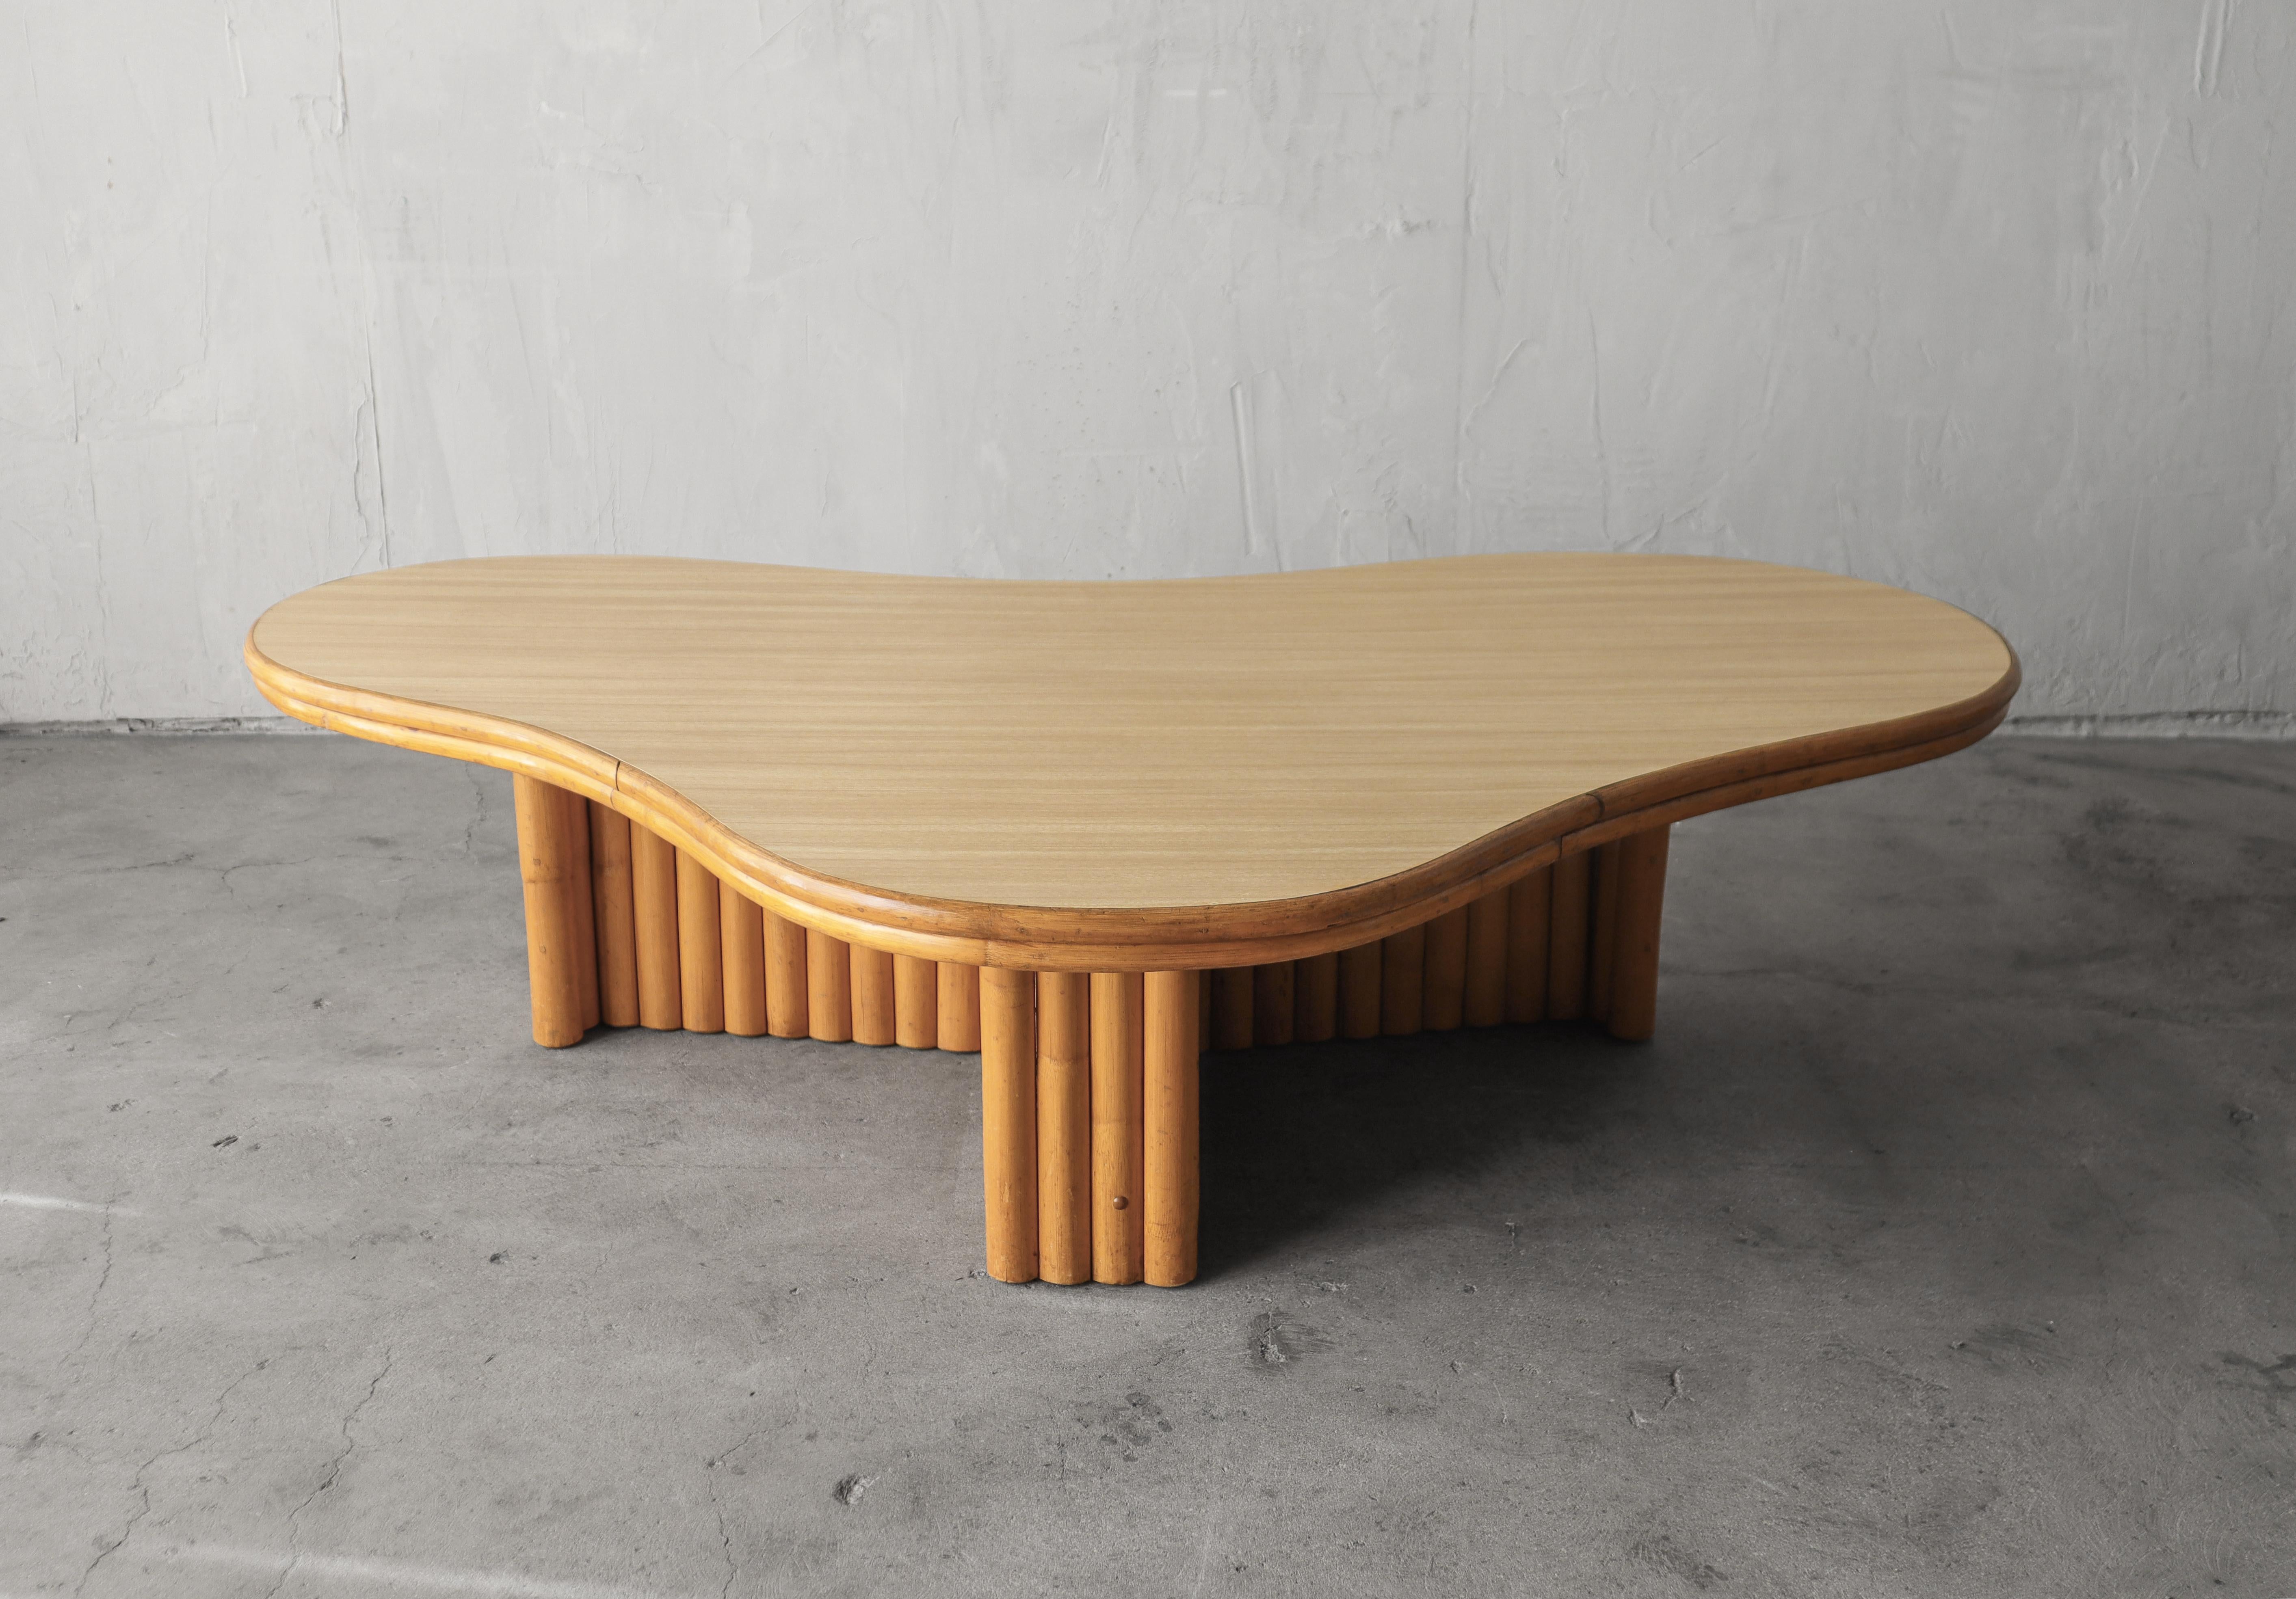 Incroyable table basse en bambou biomorphique vintage attribuée à Paul Frankl.

Le Top-Light est un stratifié bois clair très résistant. 

La table est en très bon état, le plateau ayant quelques petites bosses et le bambou une usure minime.

      